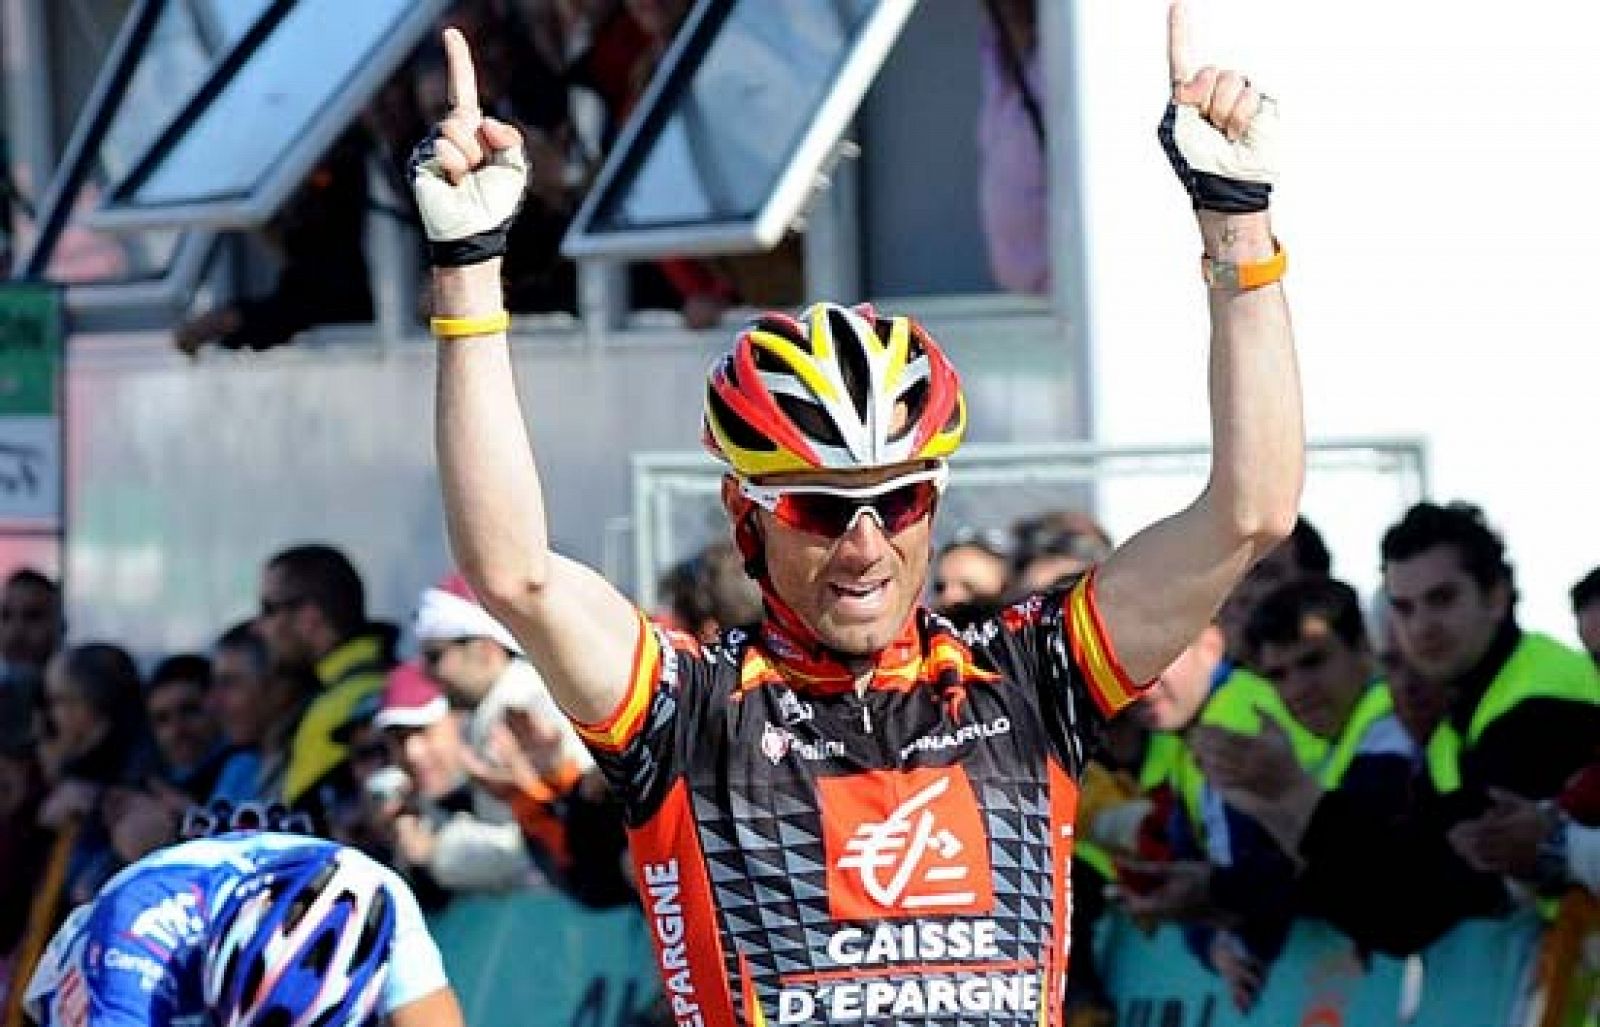 El español Valverde se ha impuesto en la tercera etapa de la Vuelta a Castilla y León, acabada en el Alto de San Isidro. El corredor del Caisse d'Epargne aprovechó el trabajo de su equipo para lanzar un ataque demoledor a 200 metros del final. 